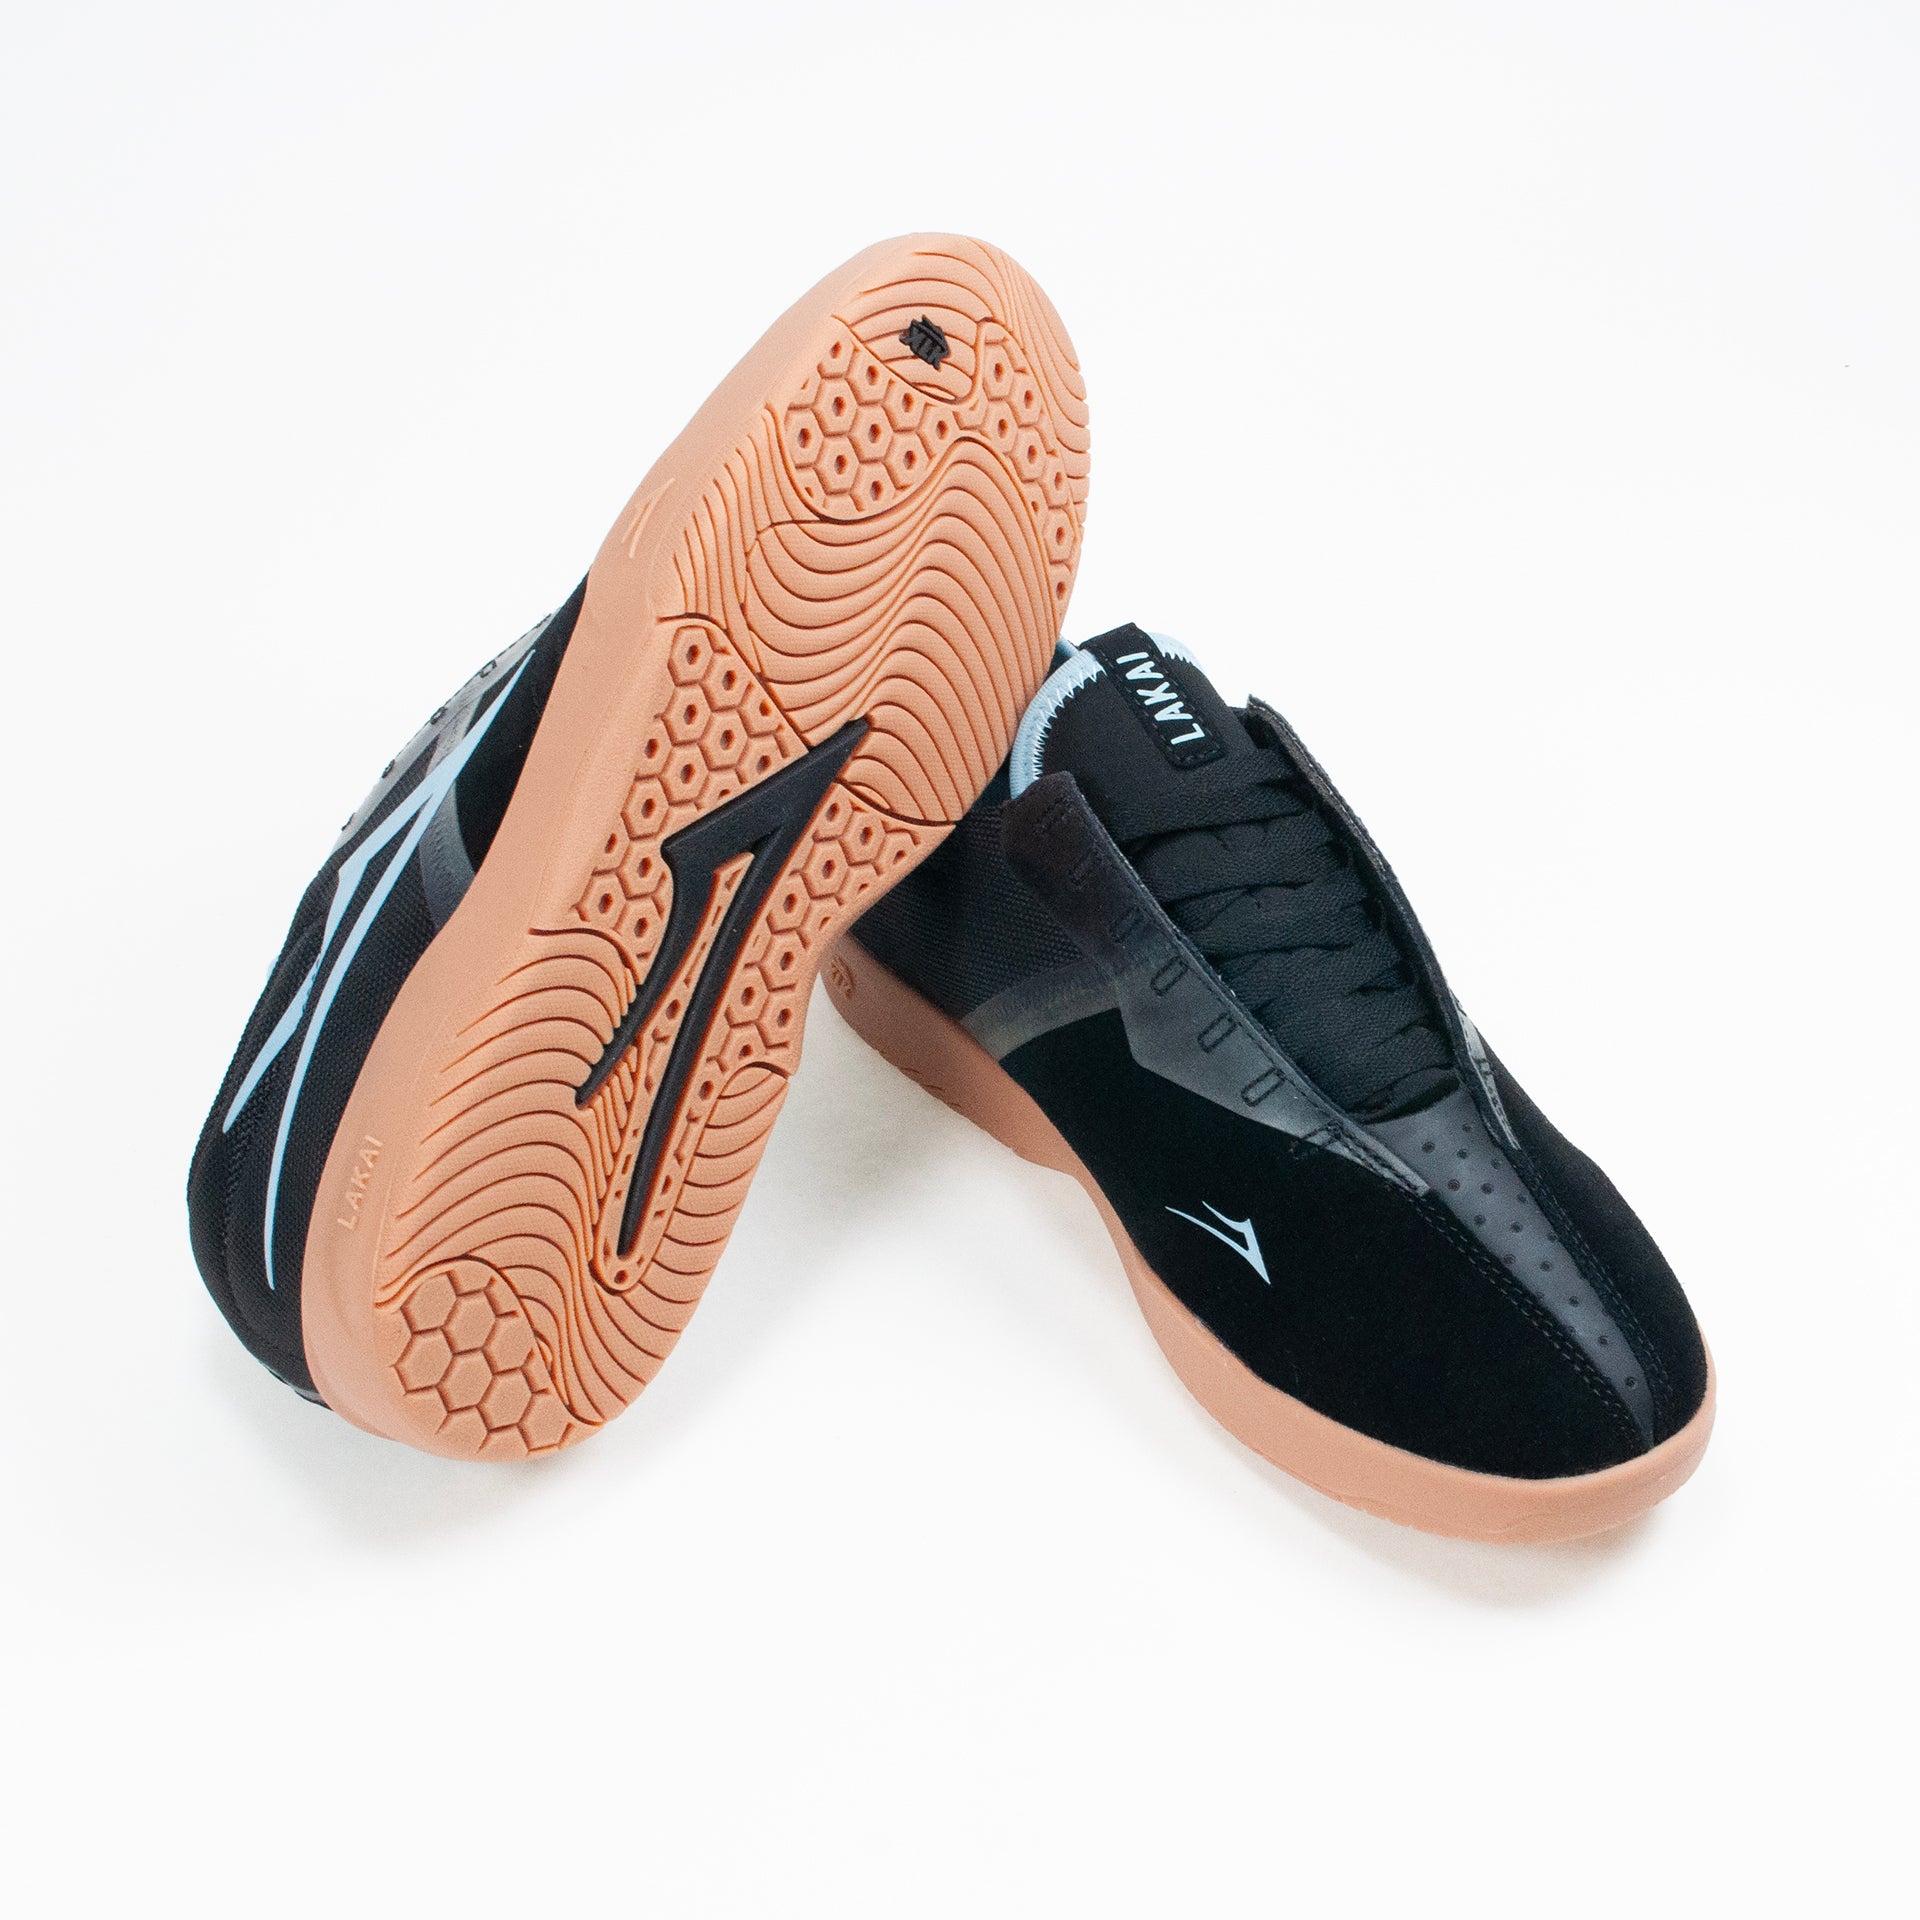 Lakai Mod Cup Skate Shoe - Black/ Gum - Prime Delux Store